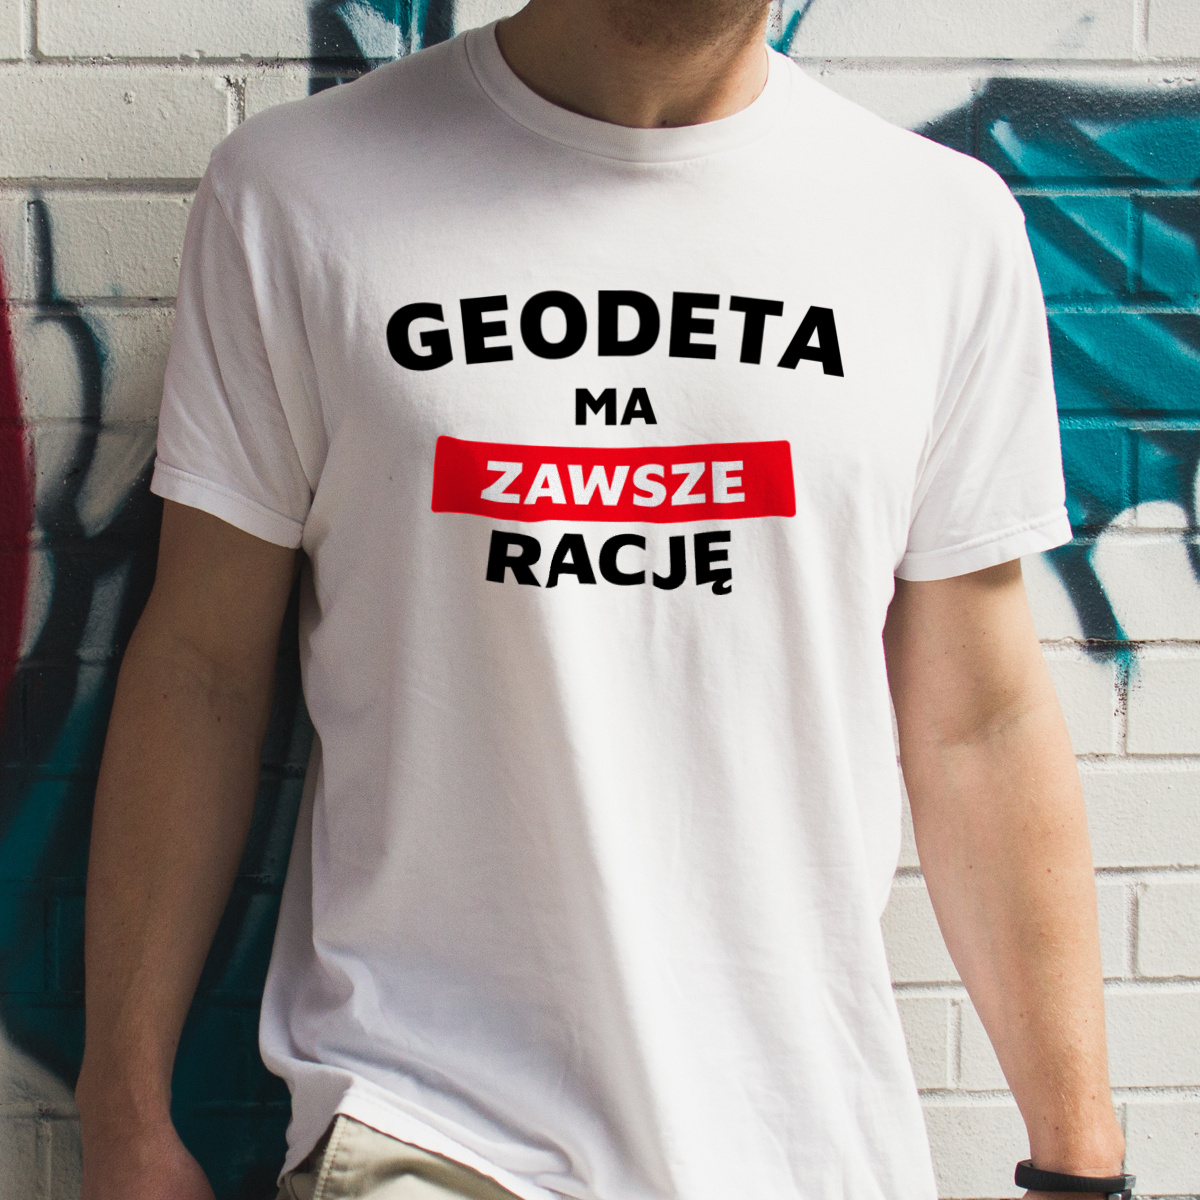 Geodeta Ma Zawsze Rację - Męska Koszulka Biała